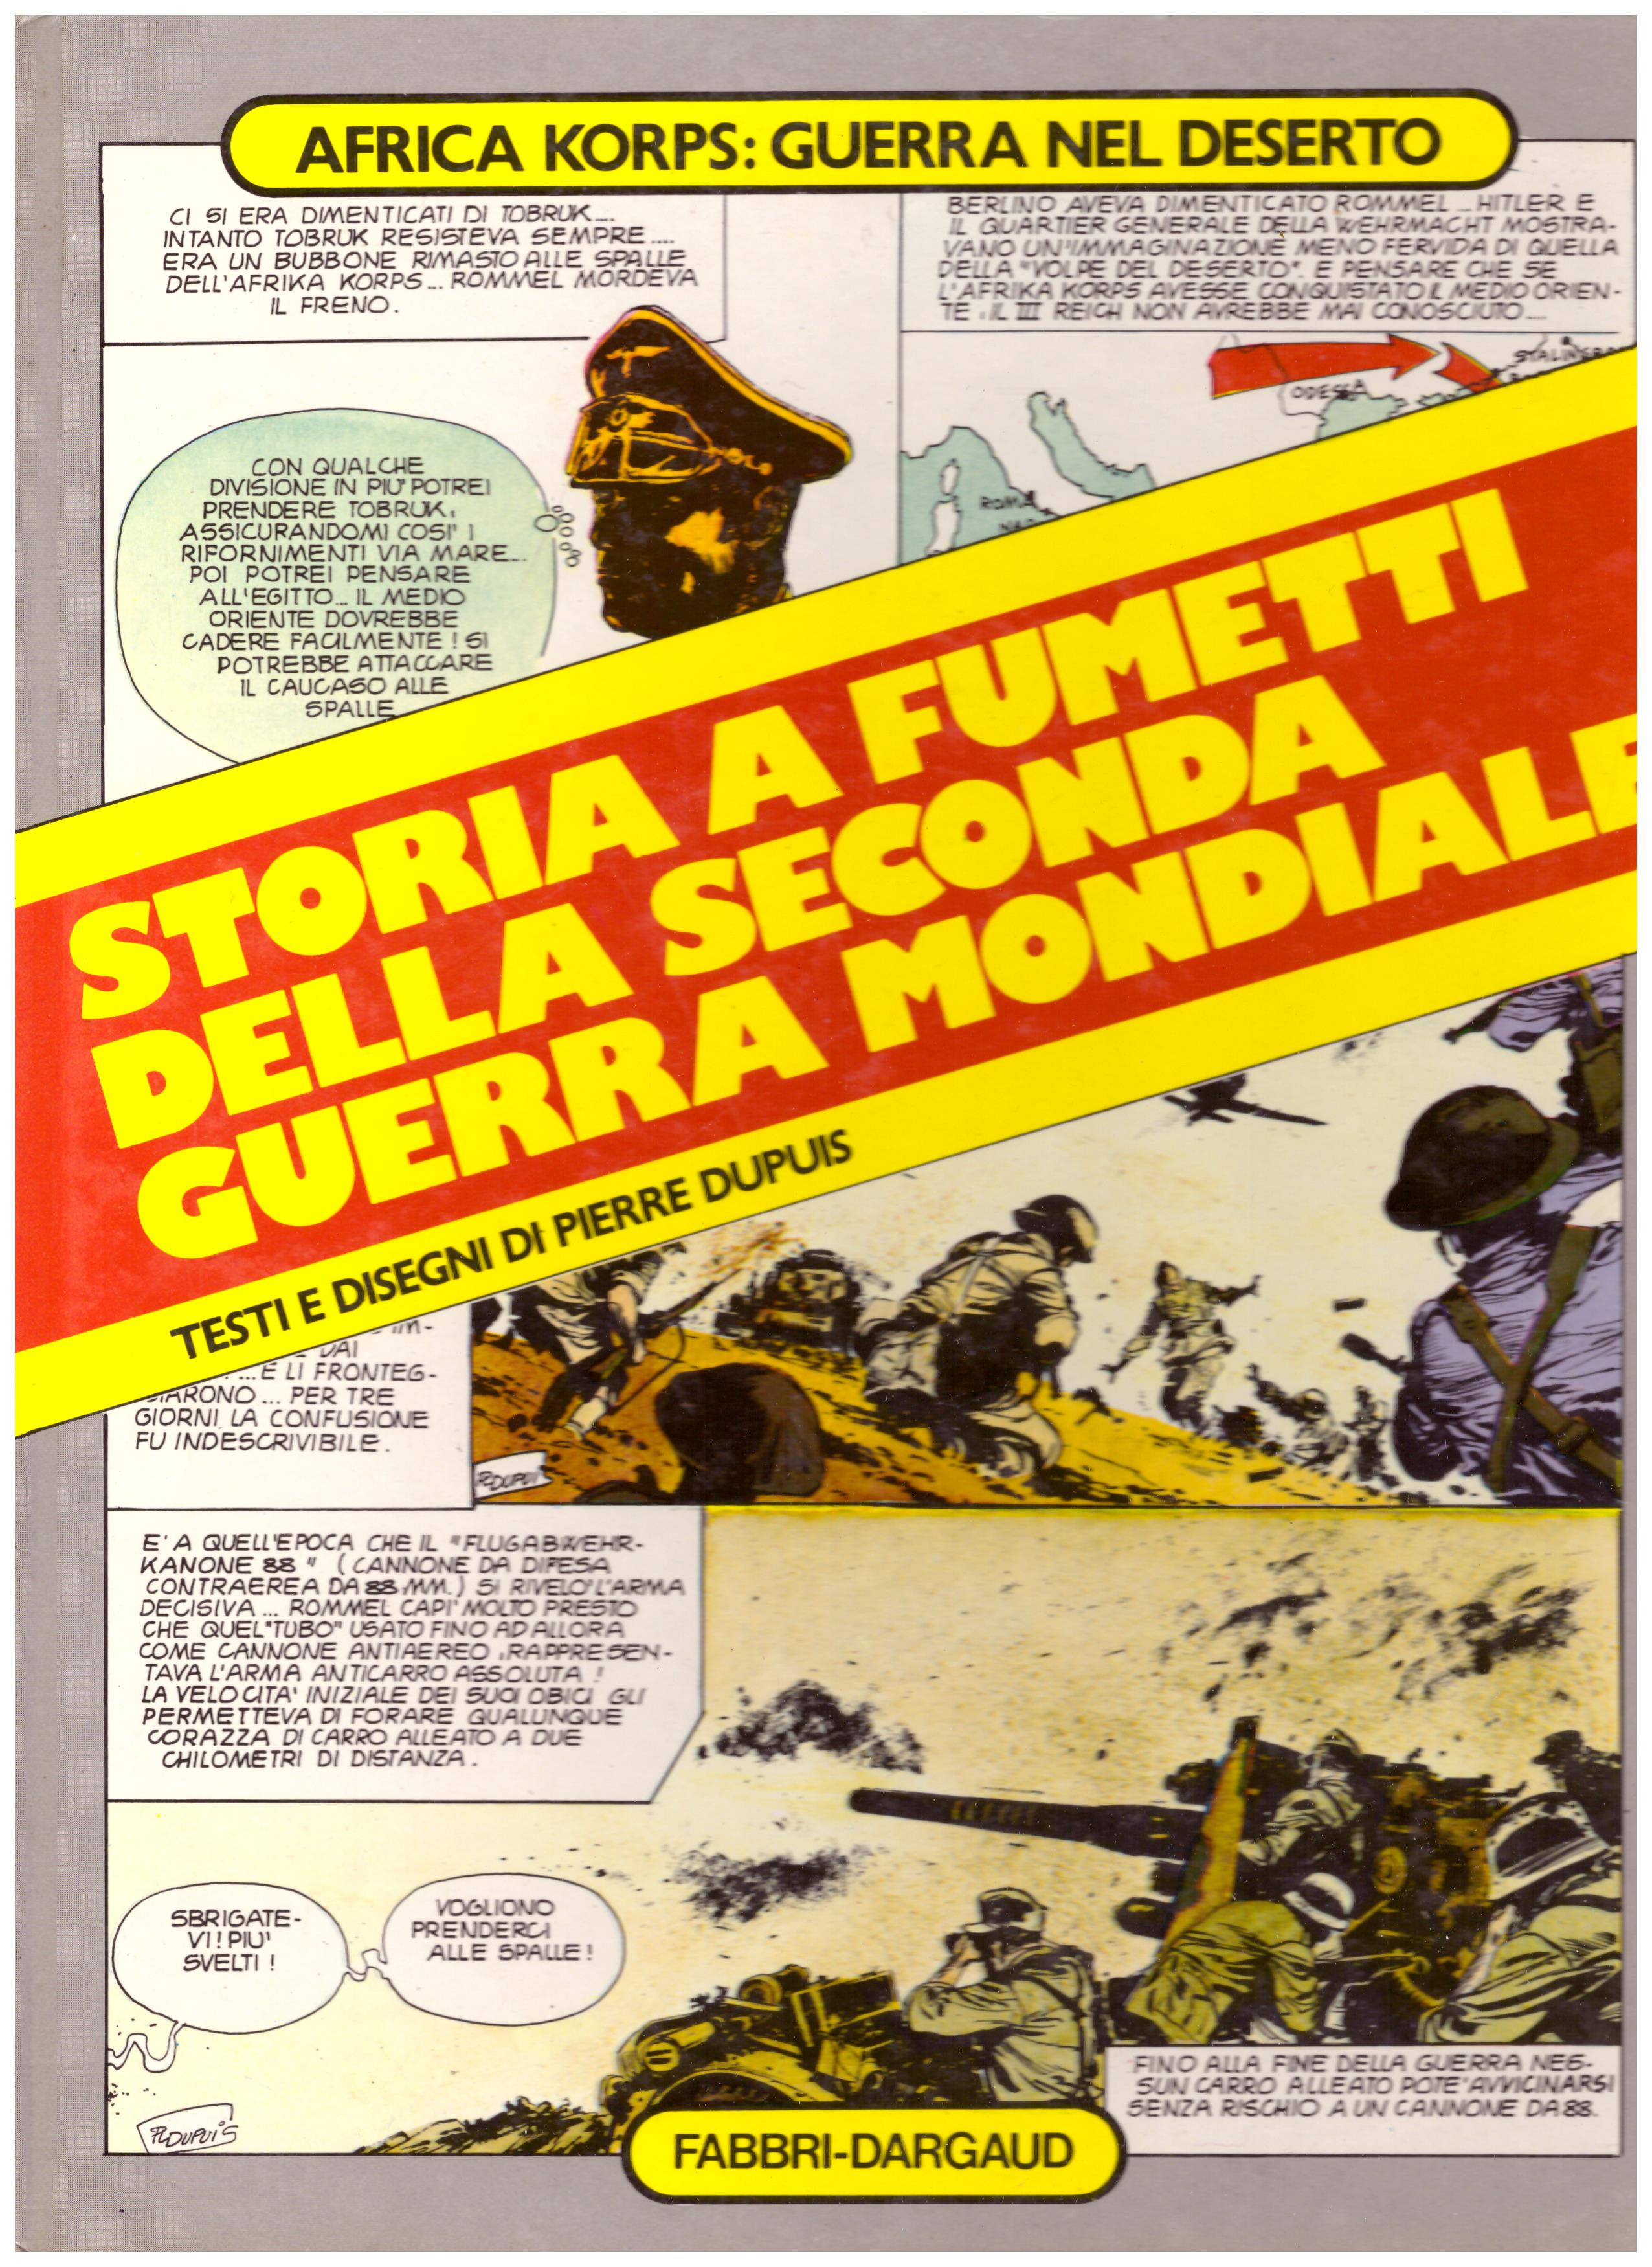 Titolo: Storia  a fumetti della seconda guerra mondiale, 4 afrika korps  Autore : AA.VV.  Editore: Fabbri-Dargaud